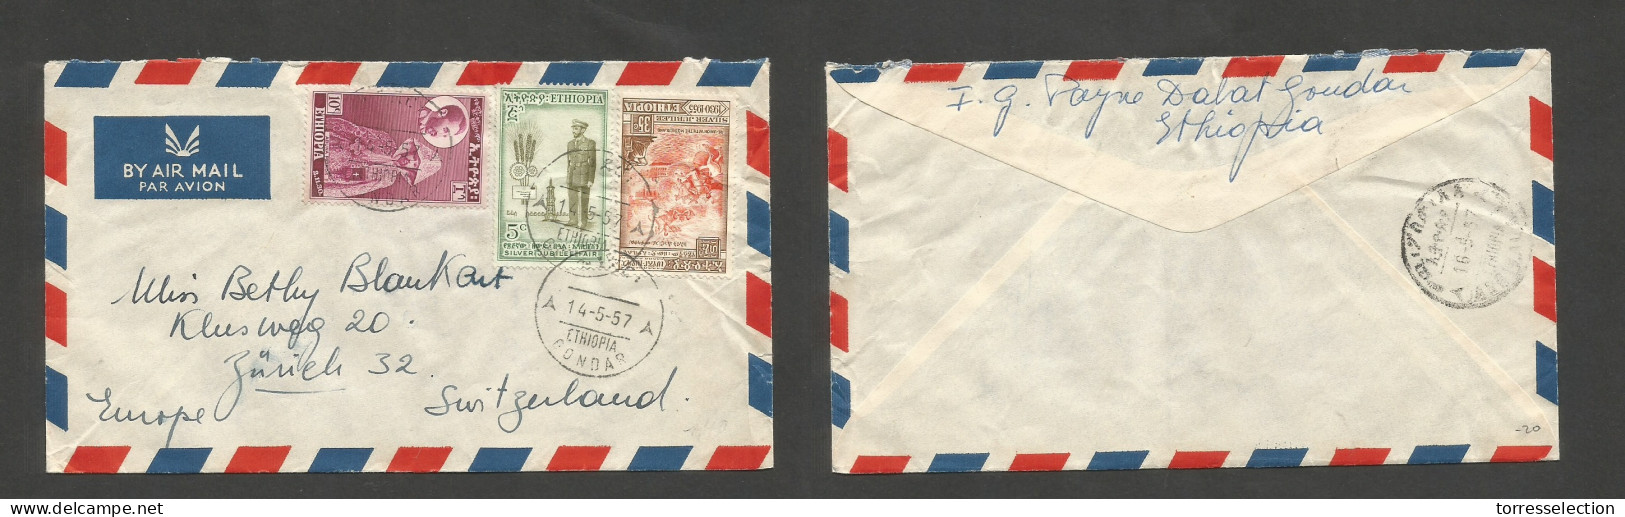 ETHIOPIA. 1957 (14 May) Gondar - Switzerland, Zurich. Air Multifkd Mixed Issues Envelope, Tied Cds. VF. SALE. - Etiopía